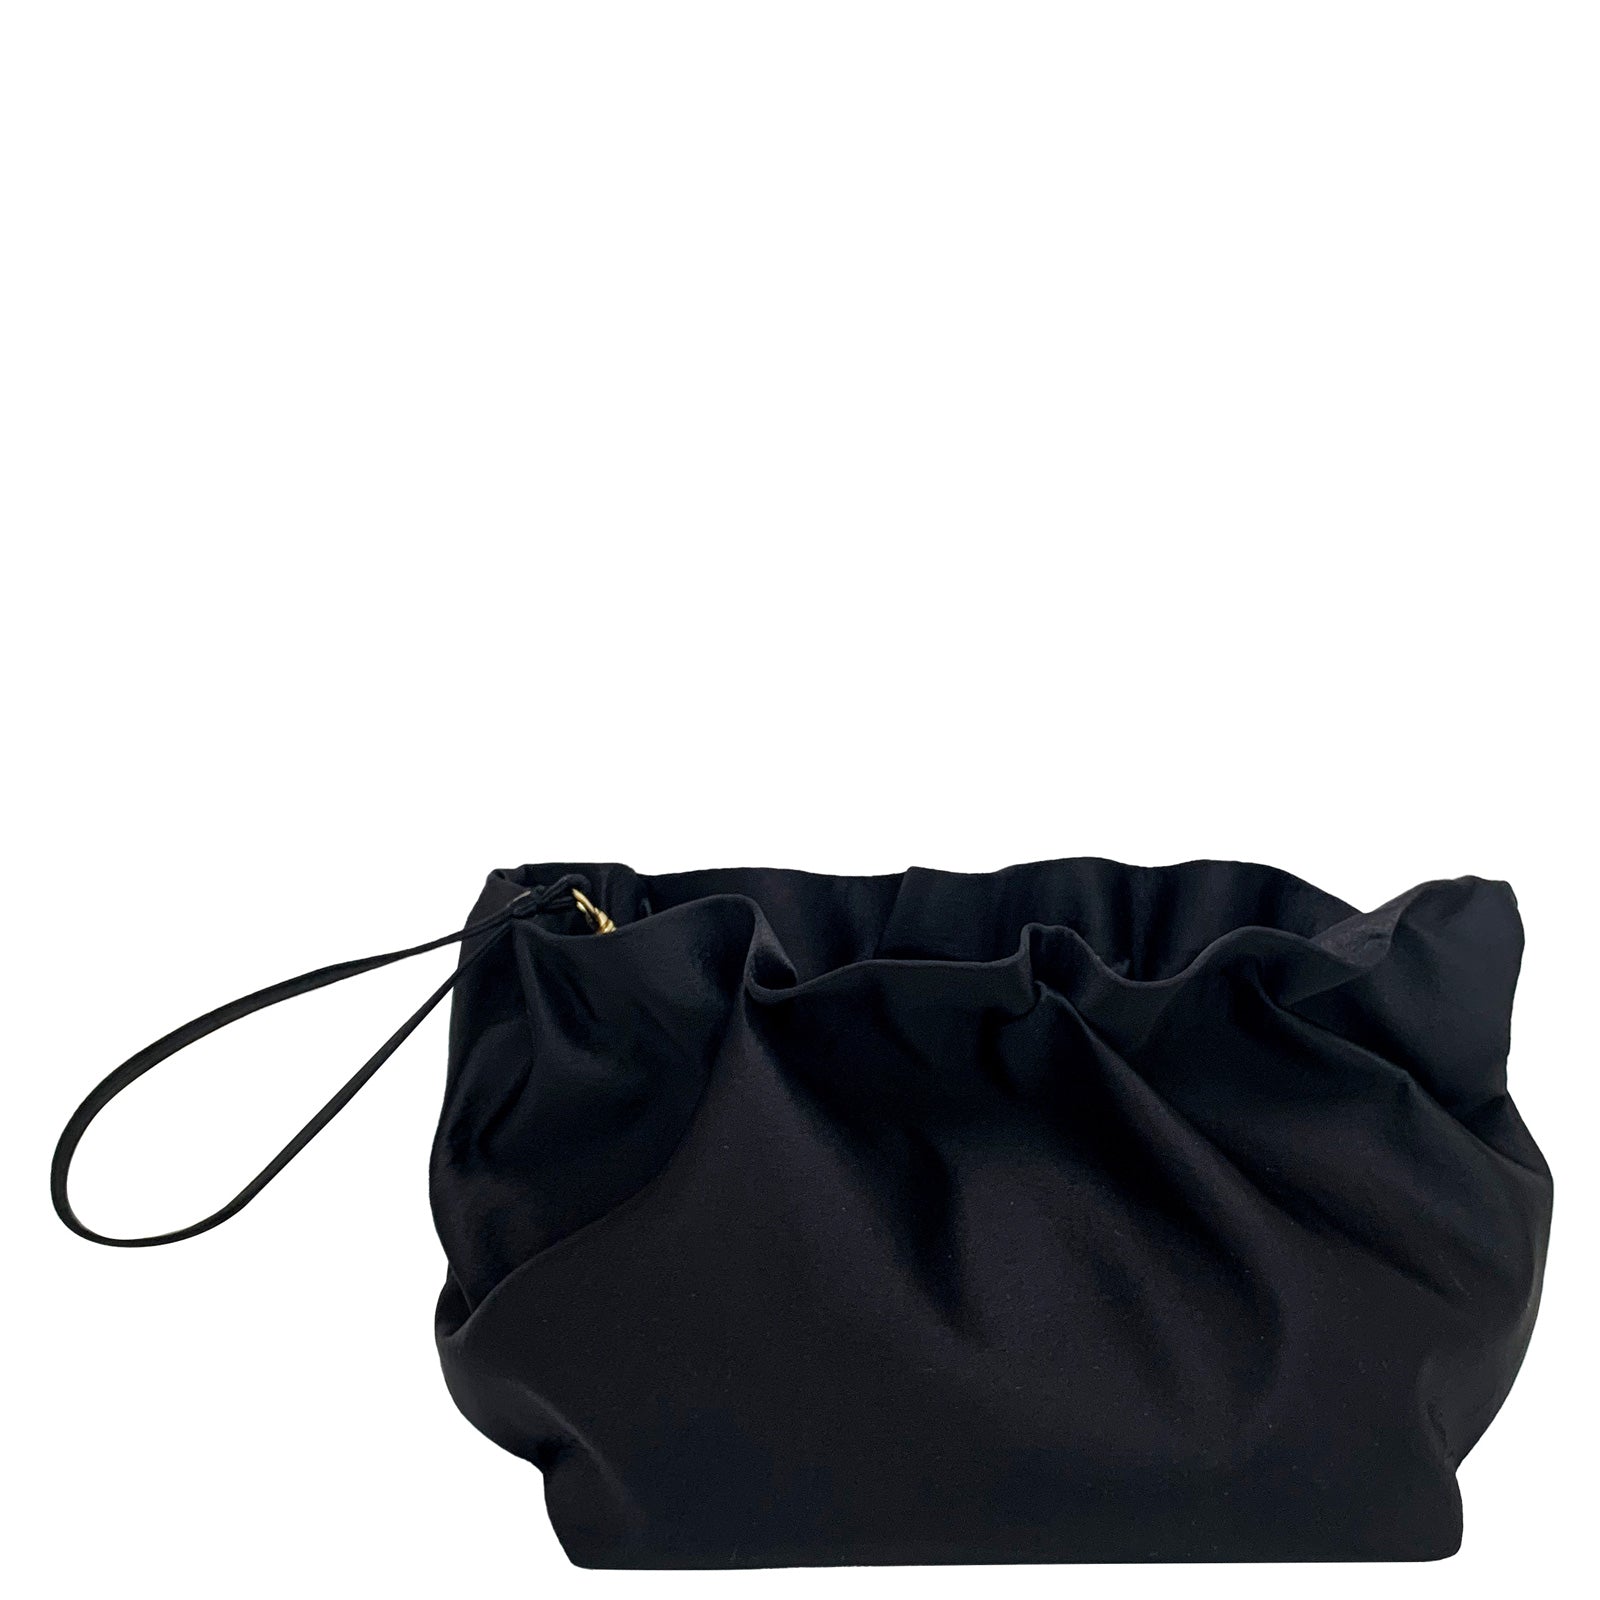 La Regale Women's Bag - Black